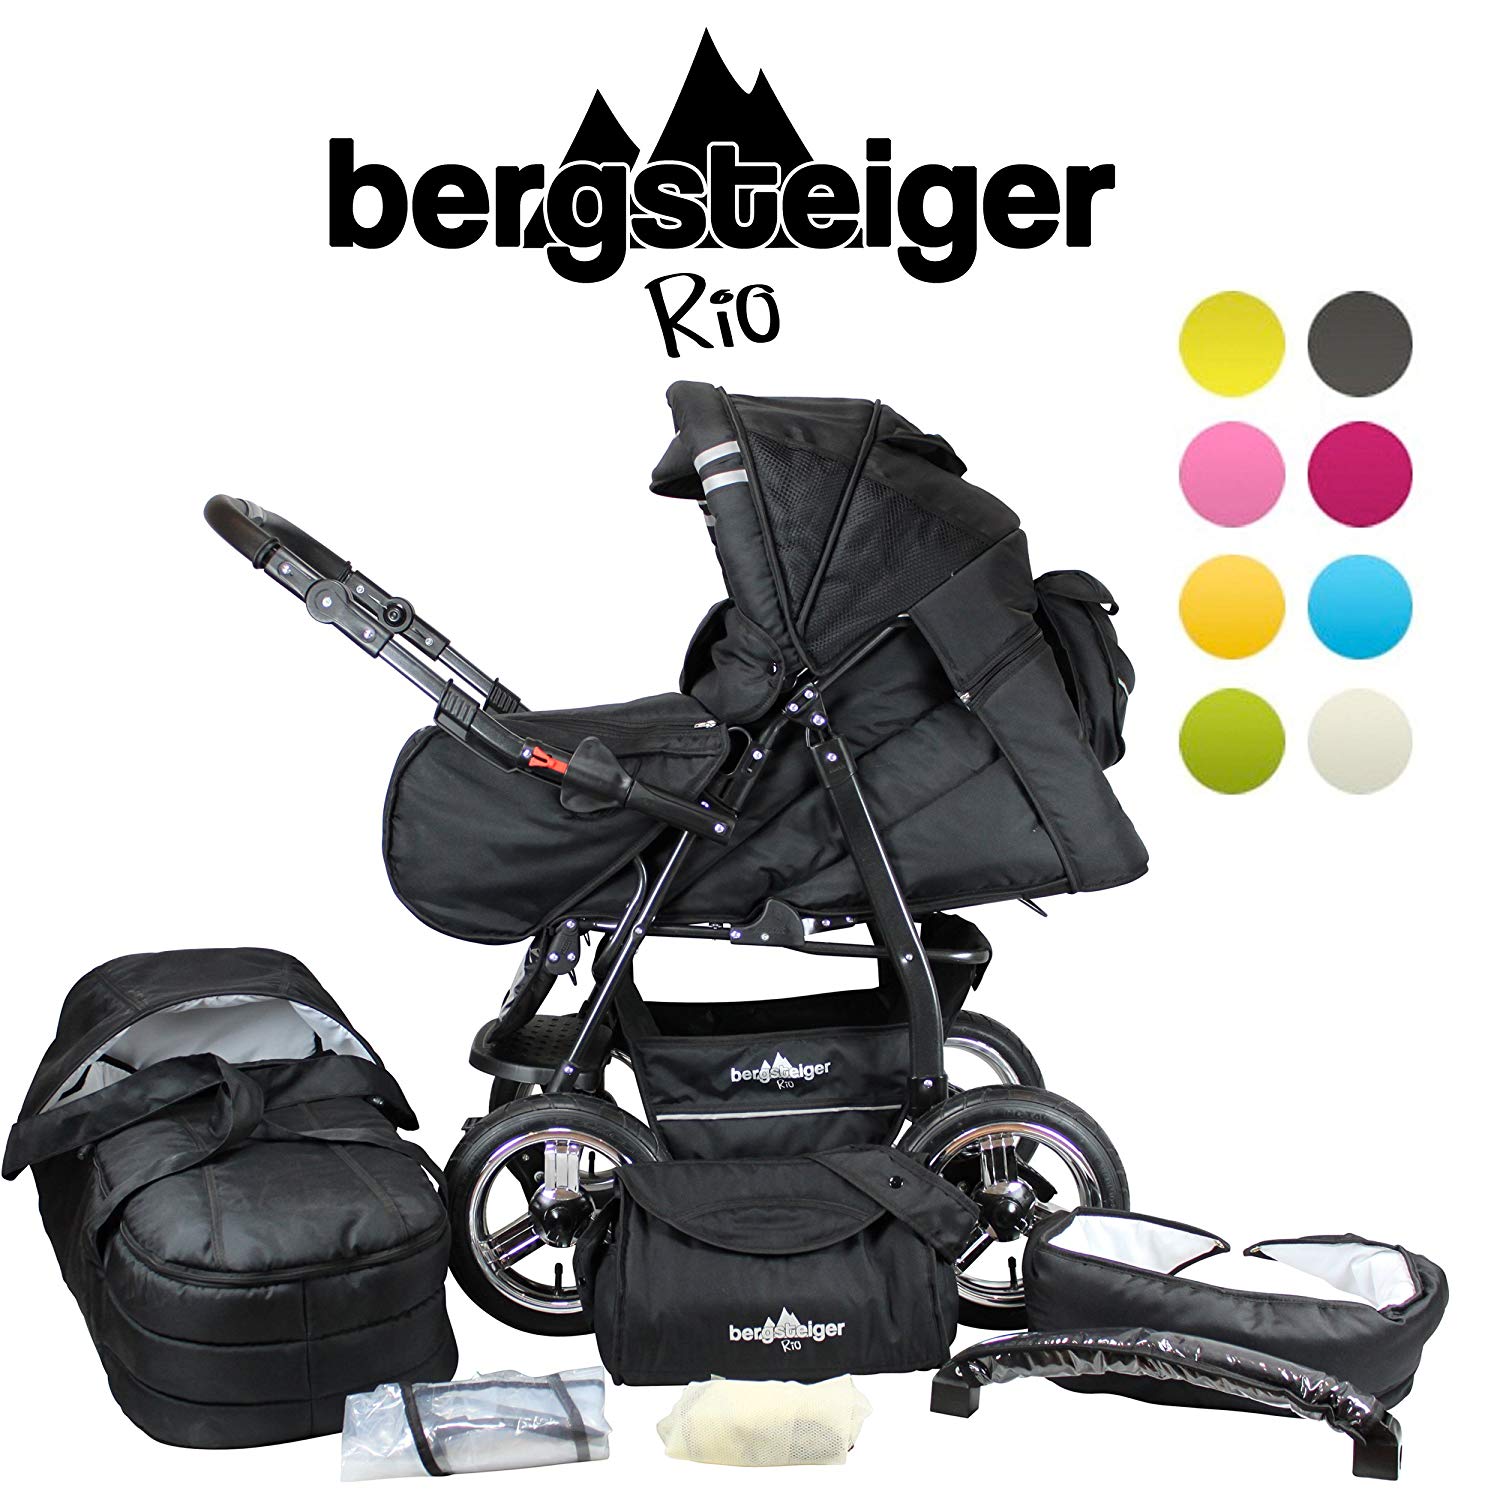 Bergsteiger Rio Combi Pushchair + Soft Carry Bag + Changing Bag (10 Pieces) Colour: Black Edition